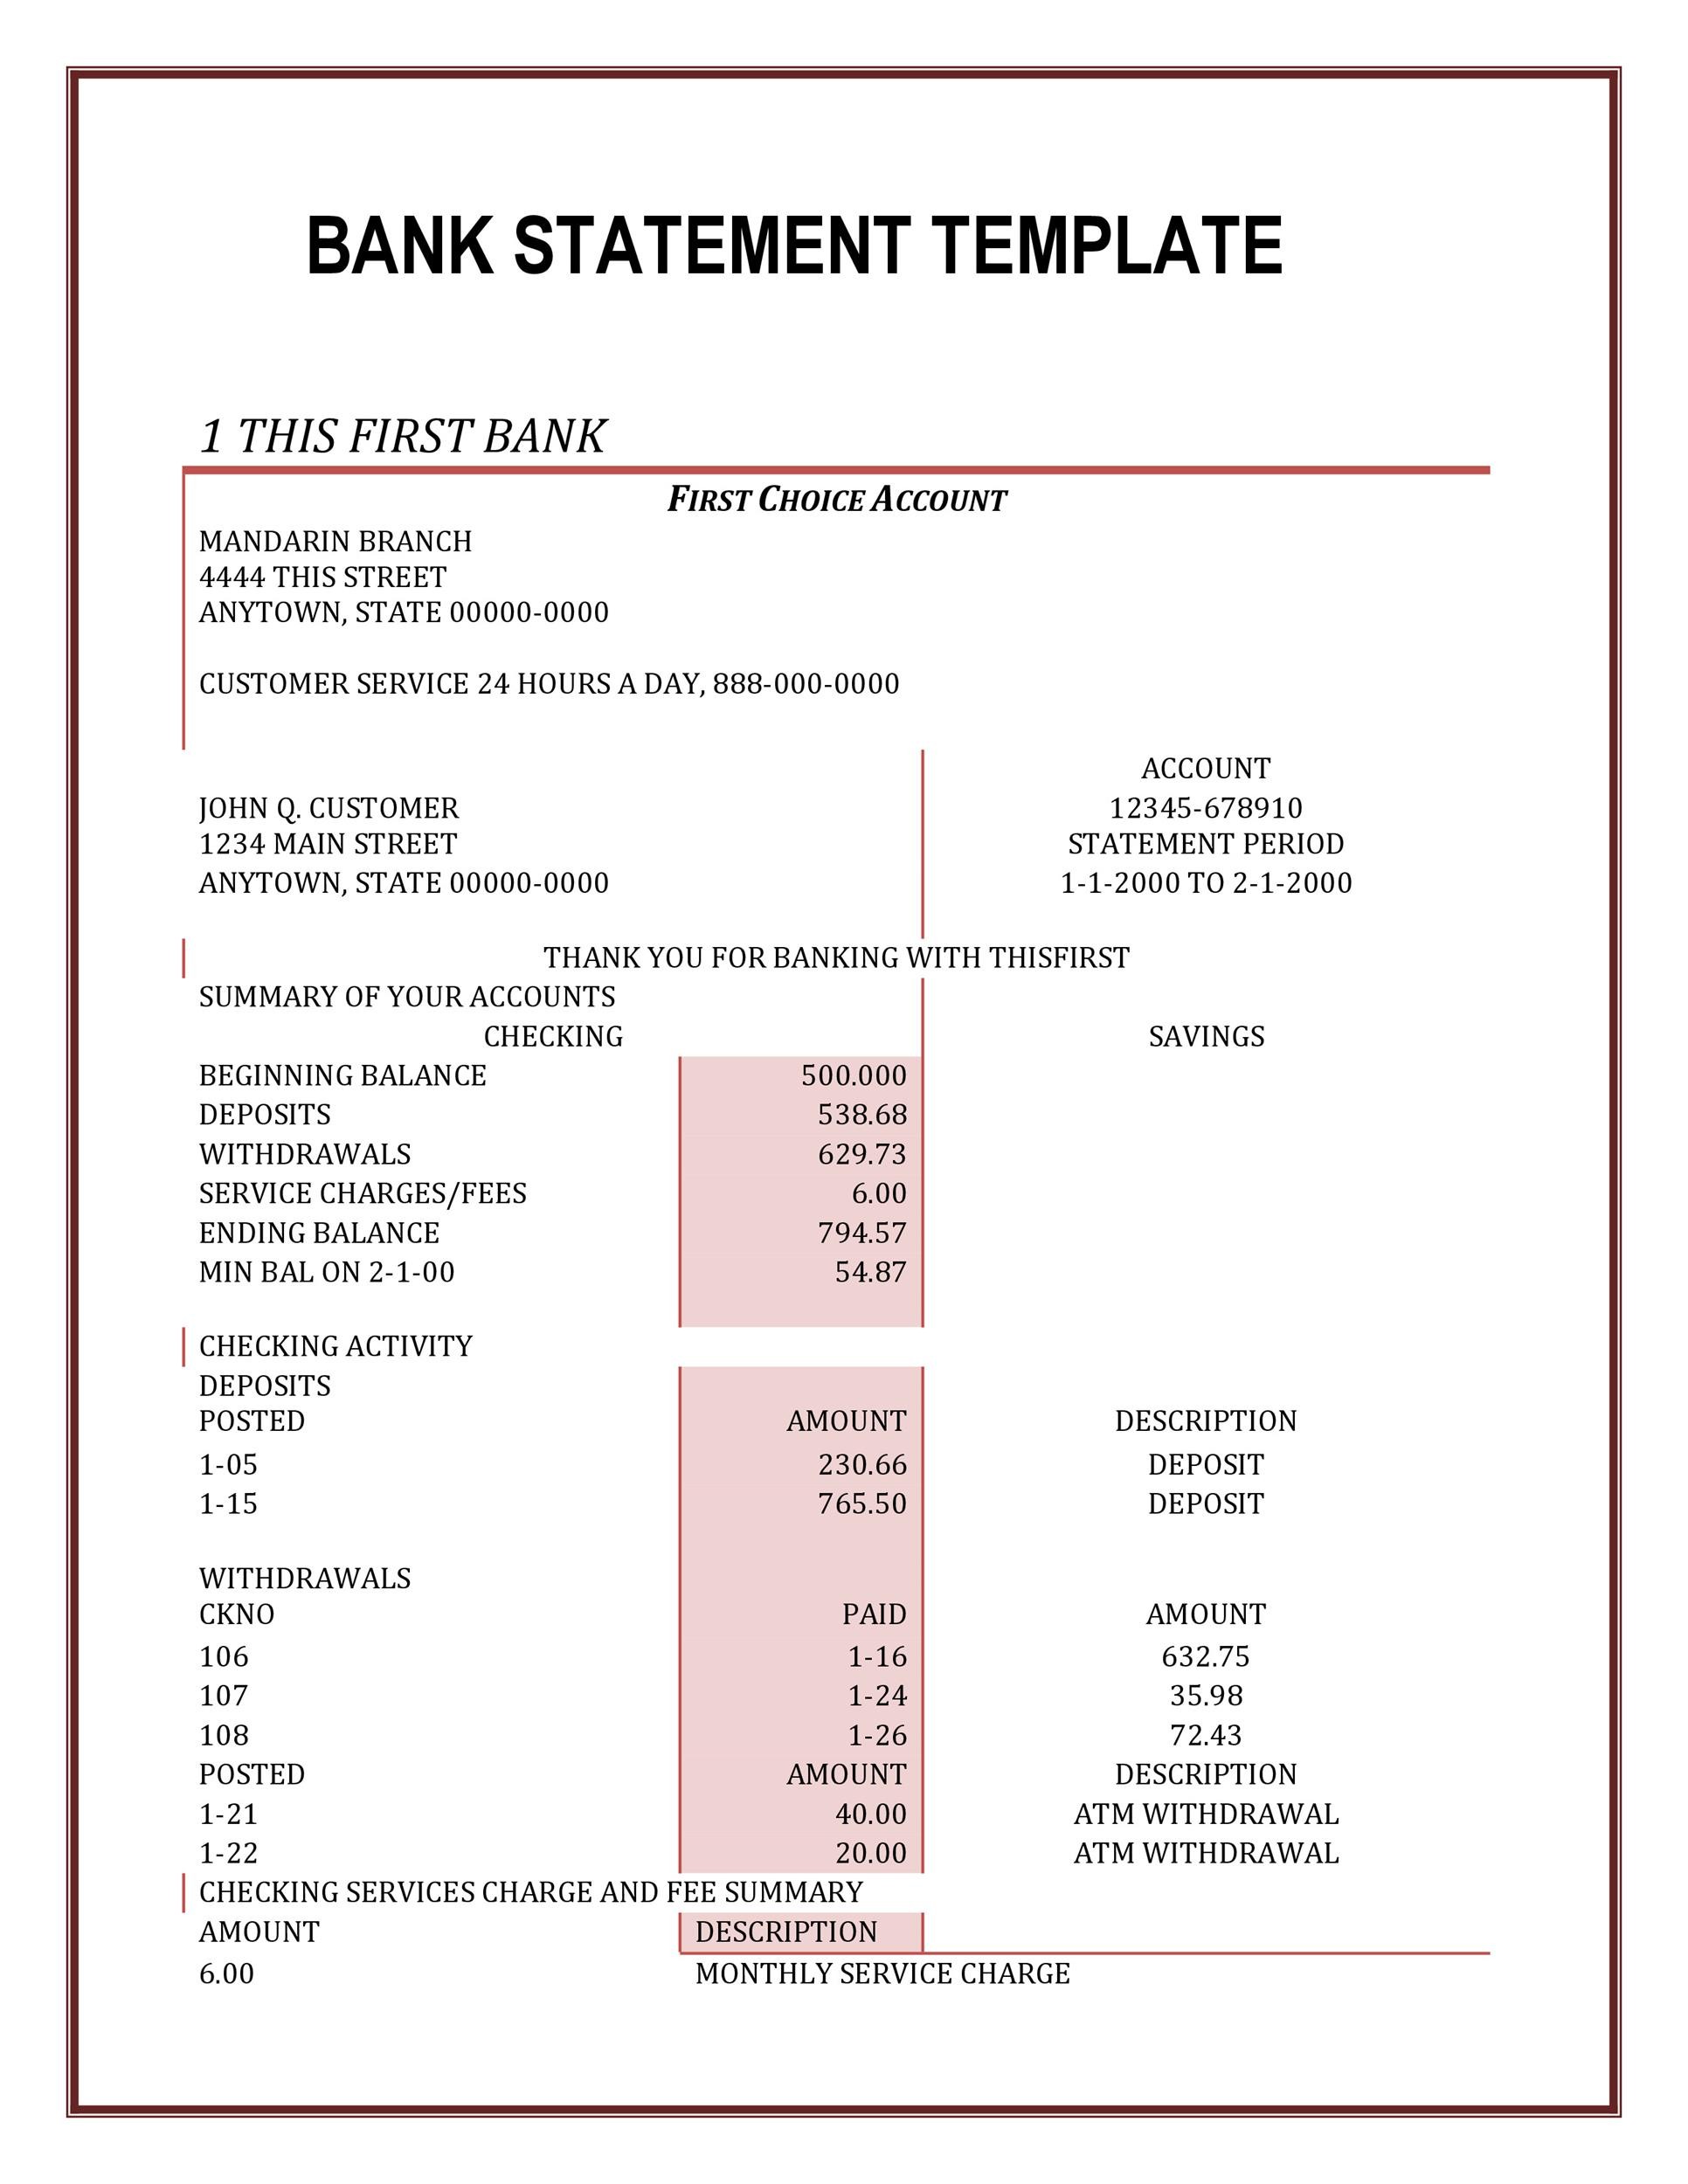 Sbi Bank Statement Format View Download Benefits Paisabazaar